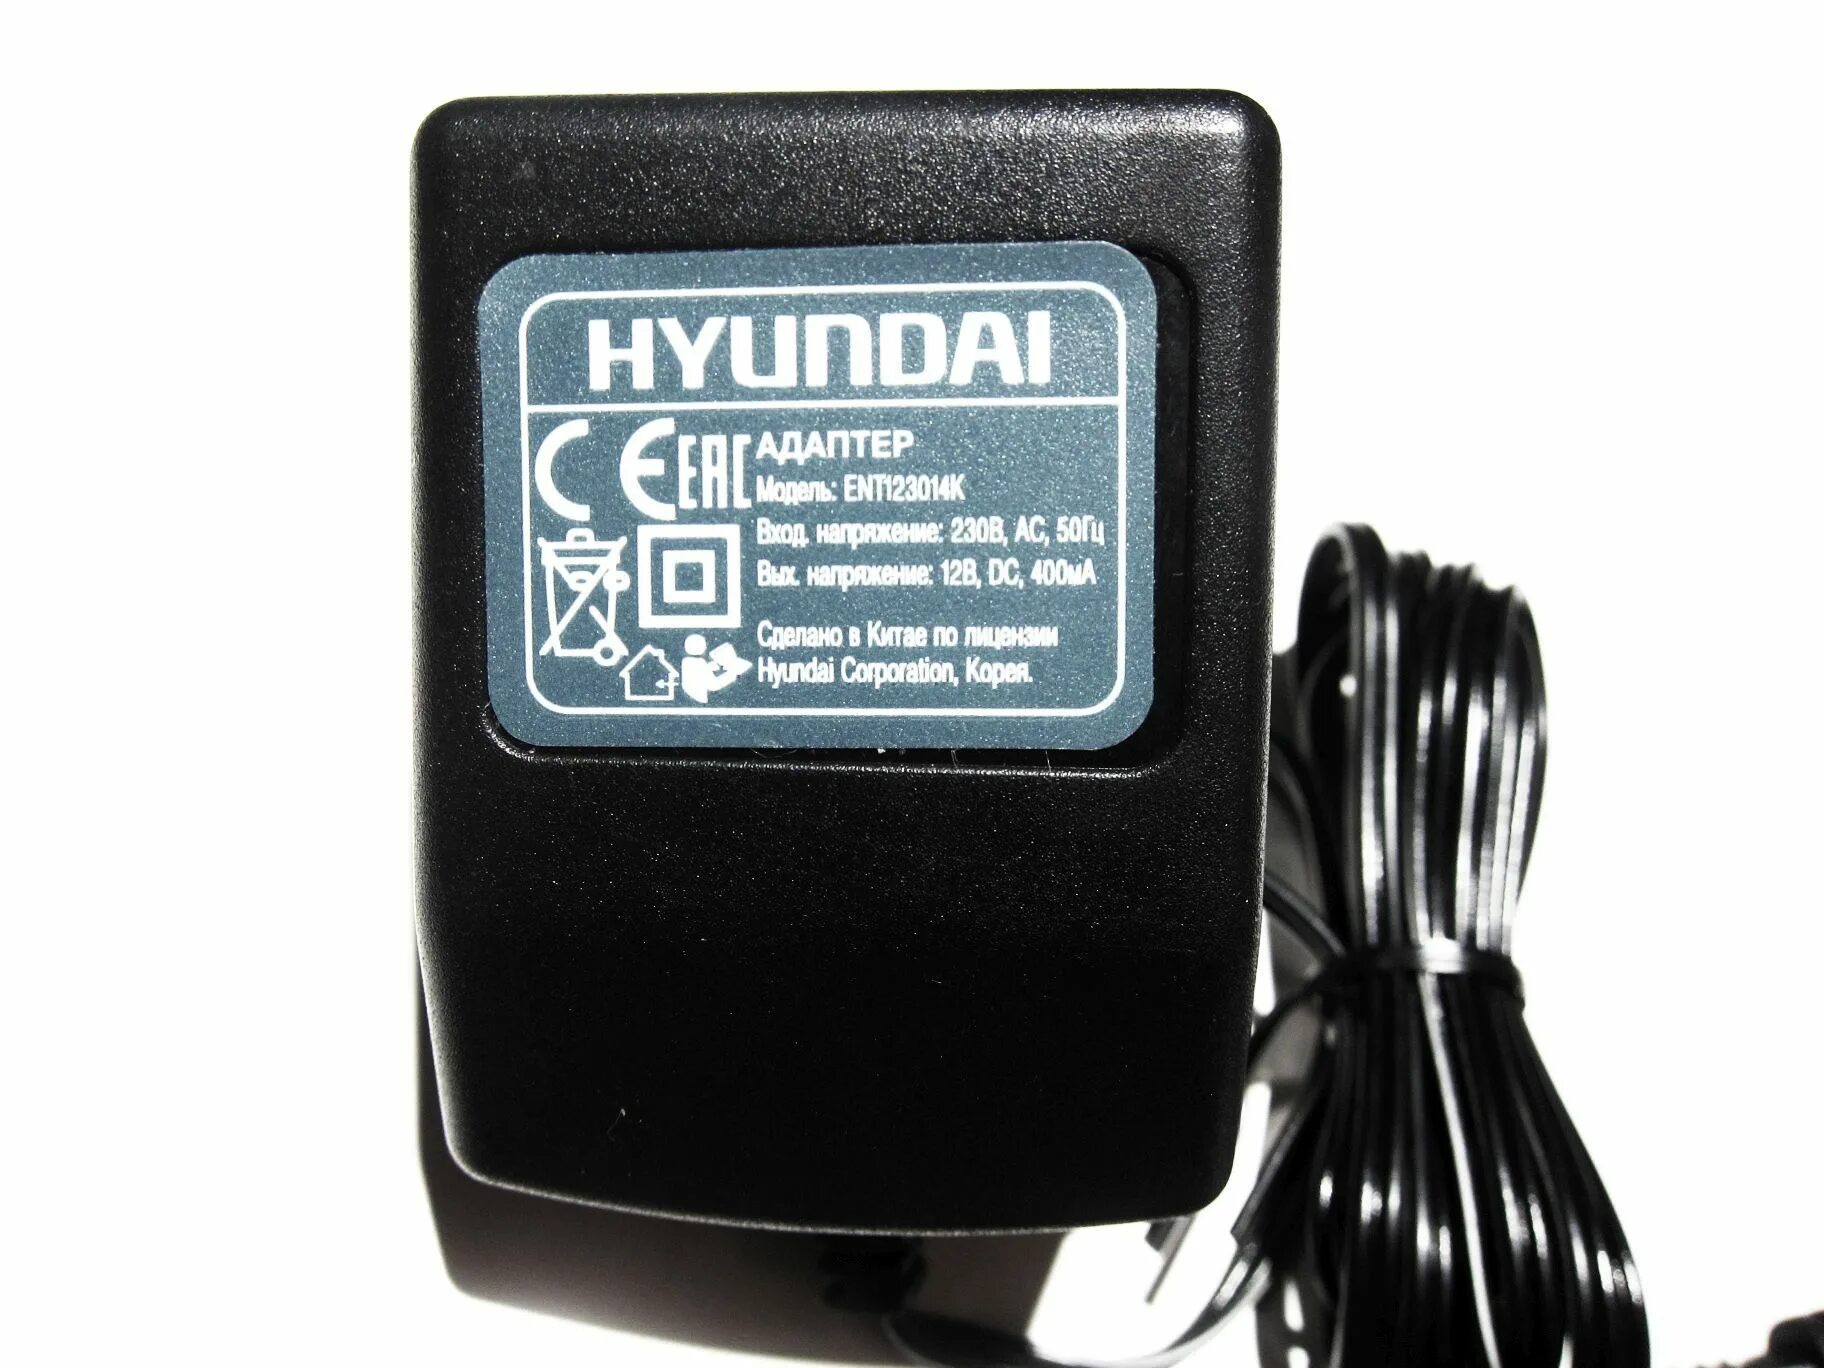 Зарядное Hyundai ent123014k. Ent123015k зарядное Hyundai. Зарядное для шуруповерта Hyundai ent123014k. Зарядка для шуруповерта Hyundai a1201. Зарядное устройство для шуруповерта 12 вольт купить